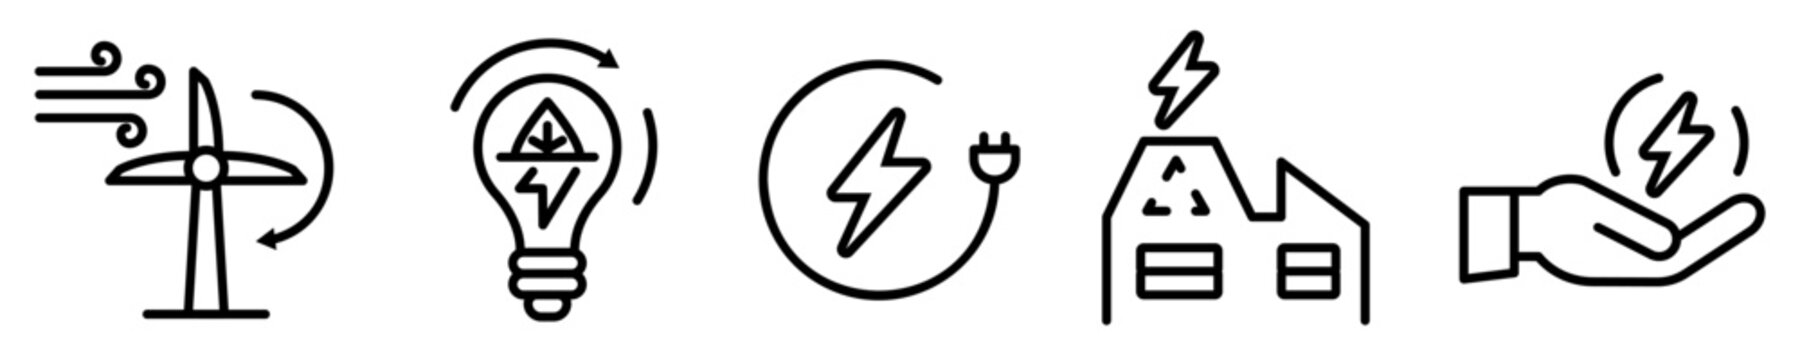 Conjunto de iconos de fuentes de energía. Electricidad. Ilustración vectorial